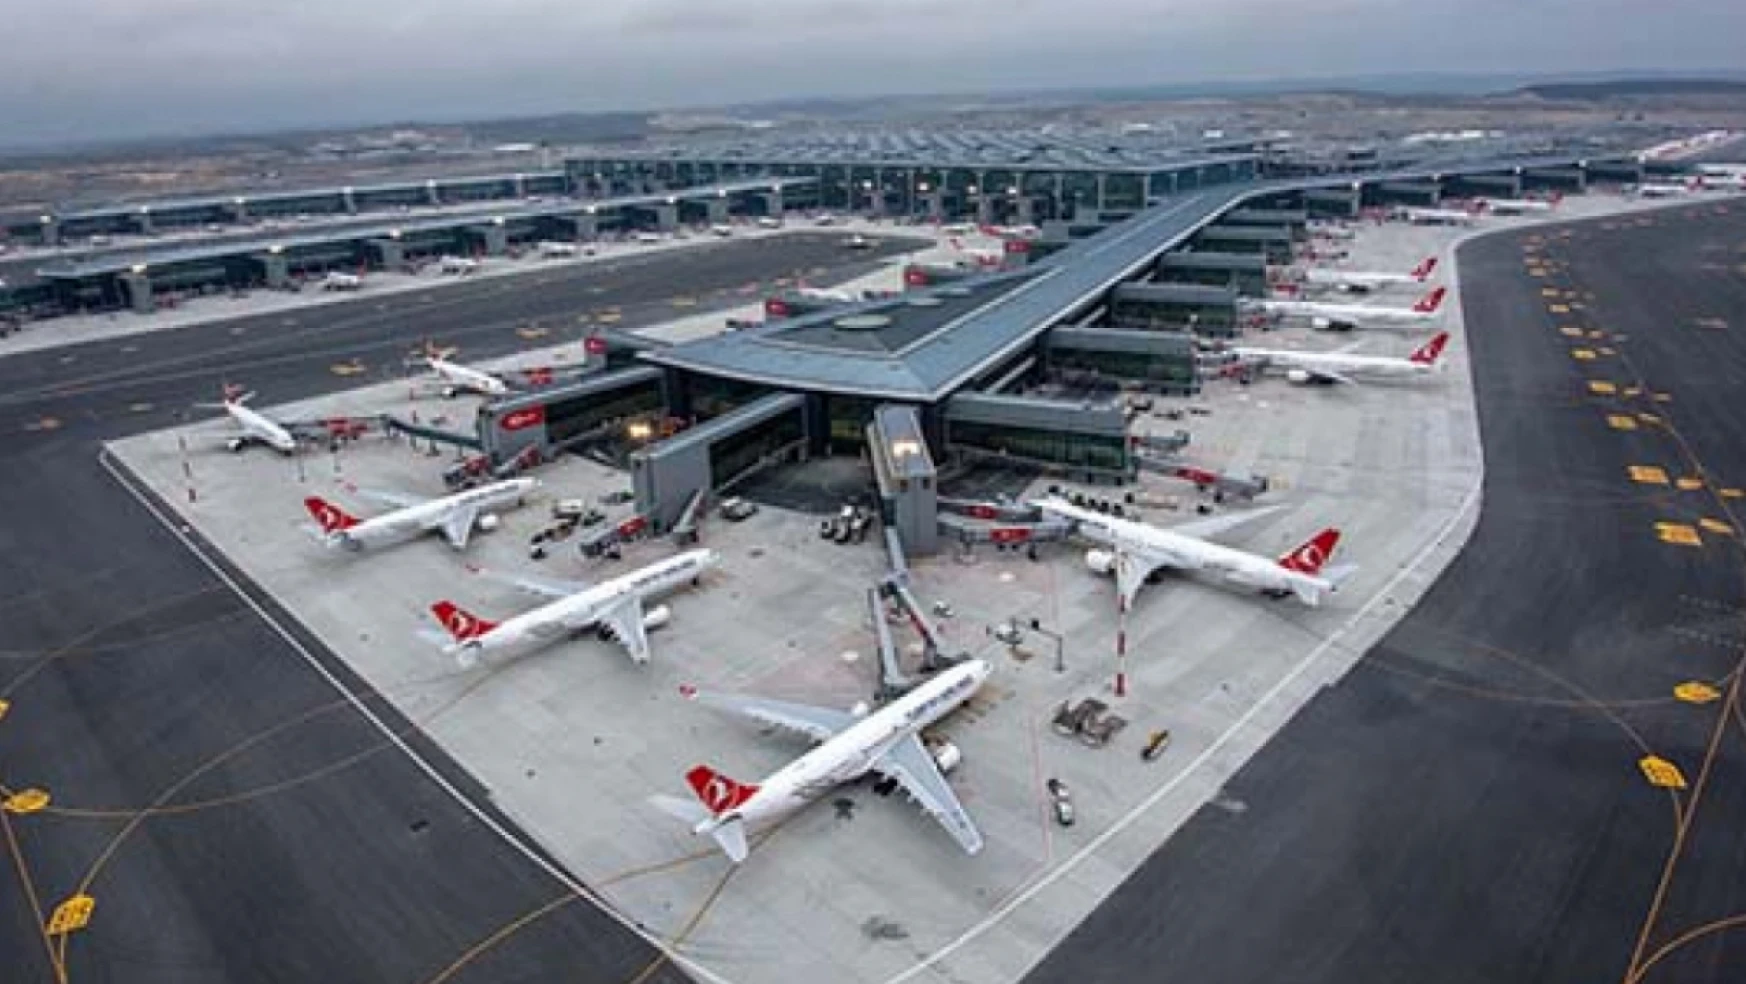 Skytrax'tan dünyanın en iyi 10 havalimanı arasına giren İstanbul Havalimanı'na iki ödül